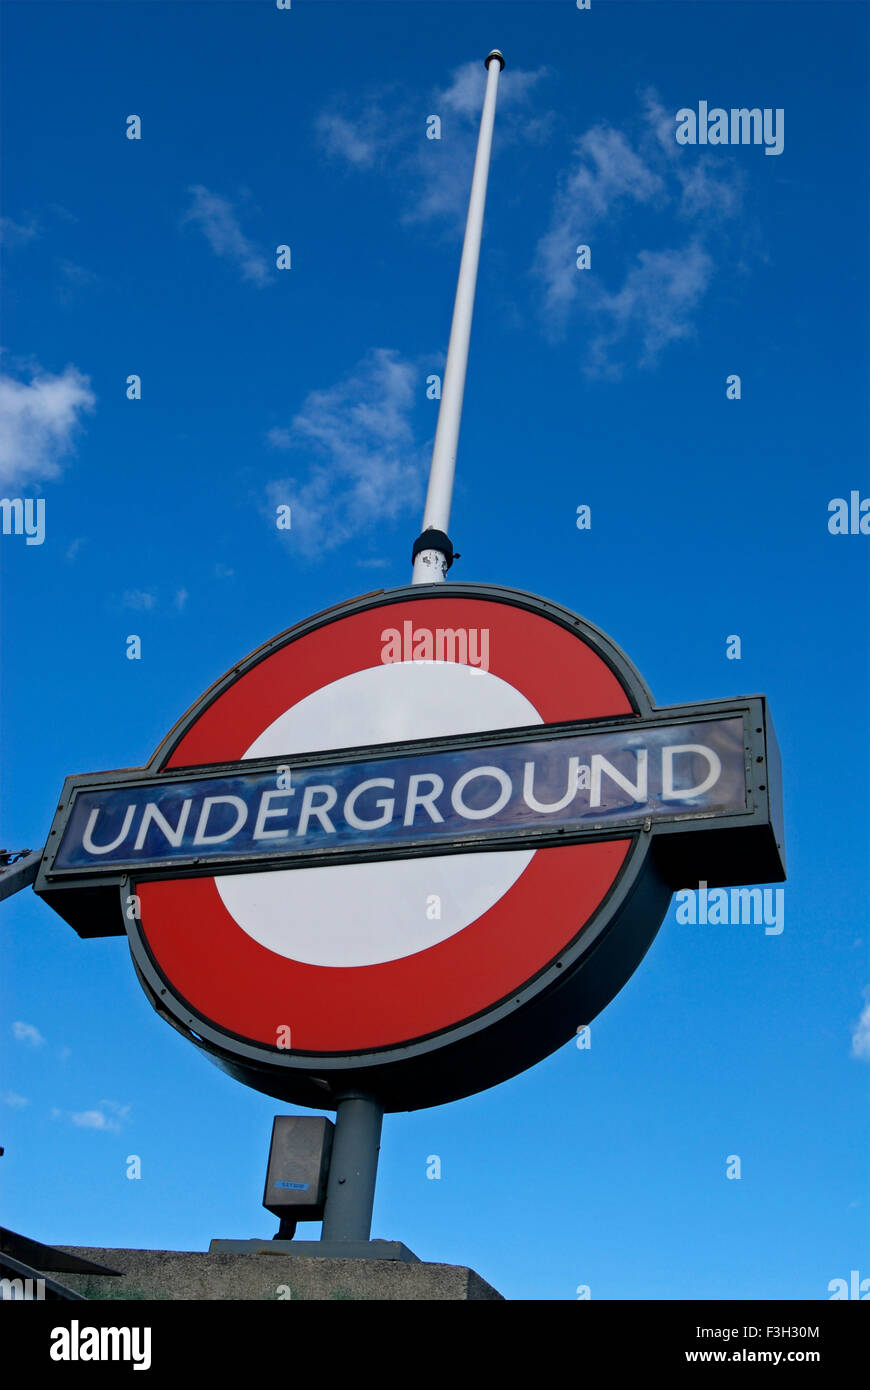 London Underground logo, London, England, United Kingdom, UK Stock Photo